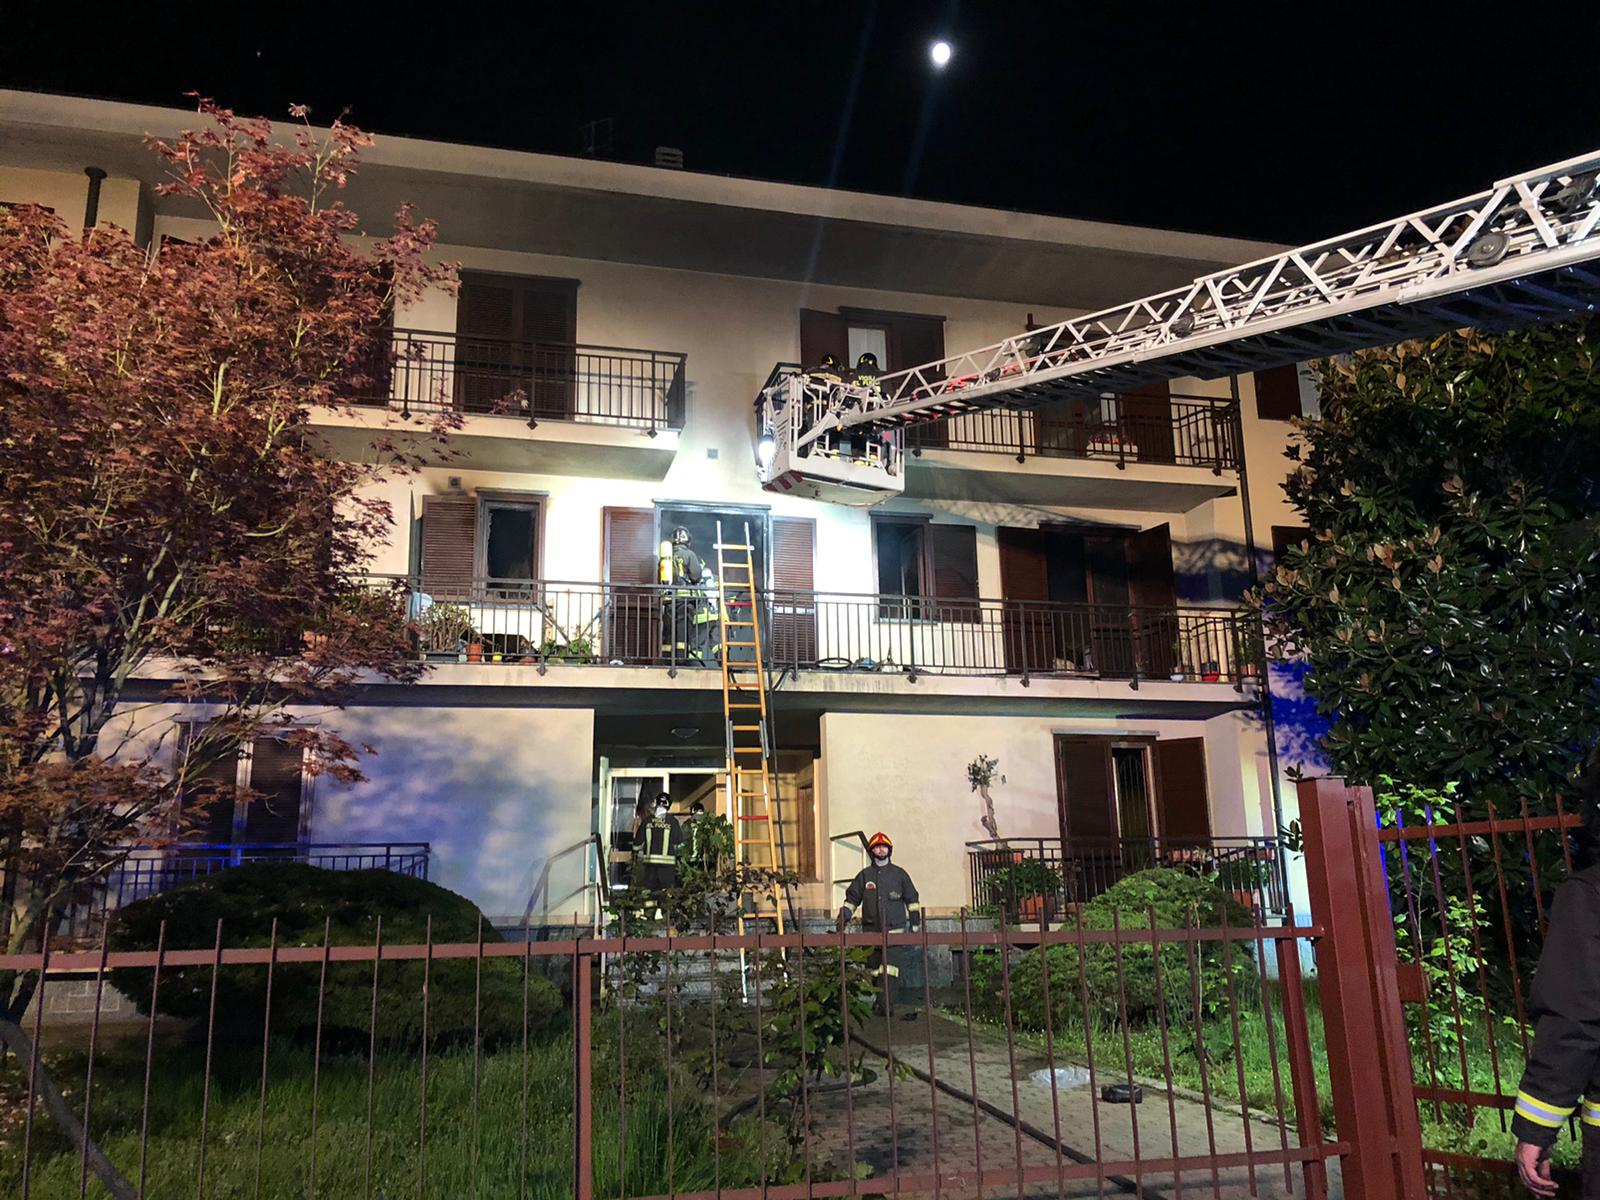 Incendio in un alloggio: una persona ferita e intossicata. E' successo nella notte a Settimo Torinese. Il bilancio è di un ferito e sette persone evacuate.